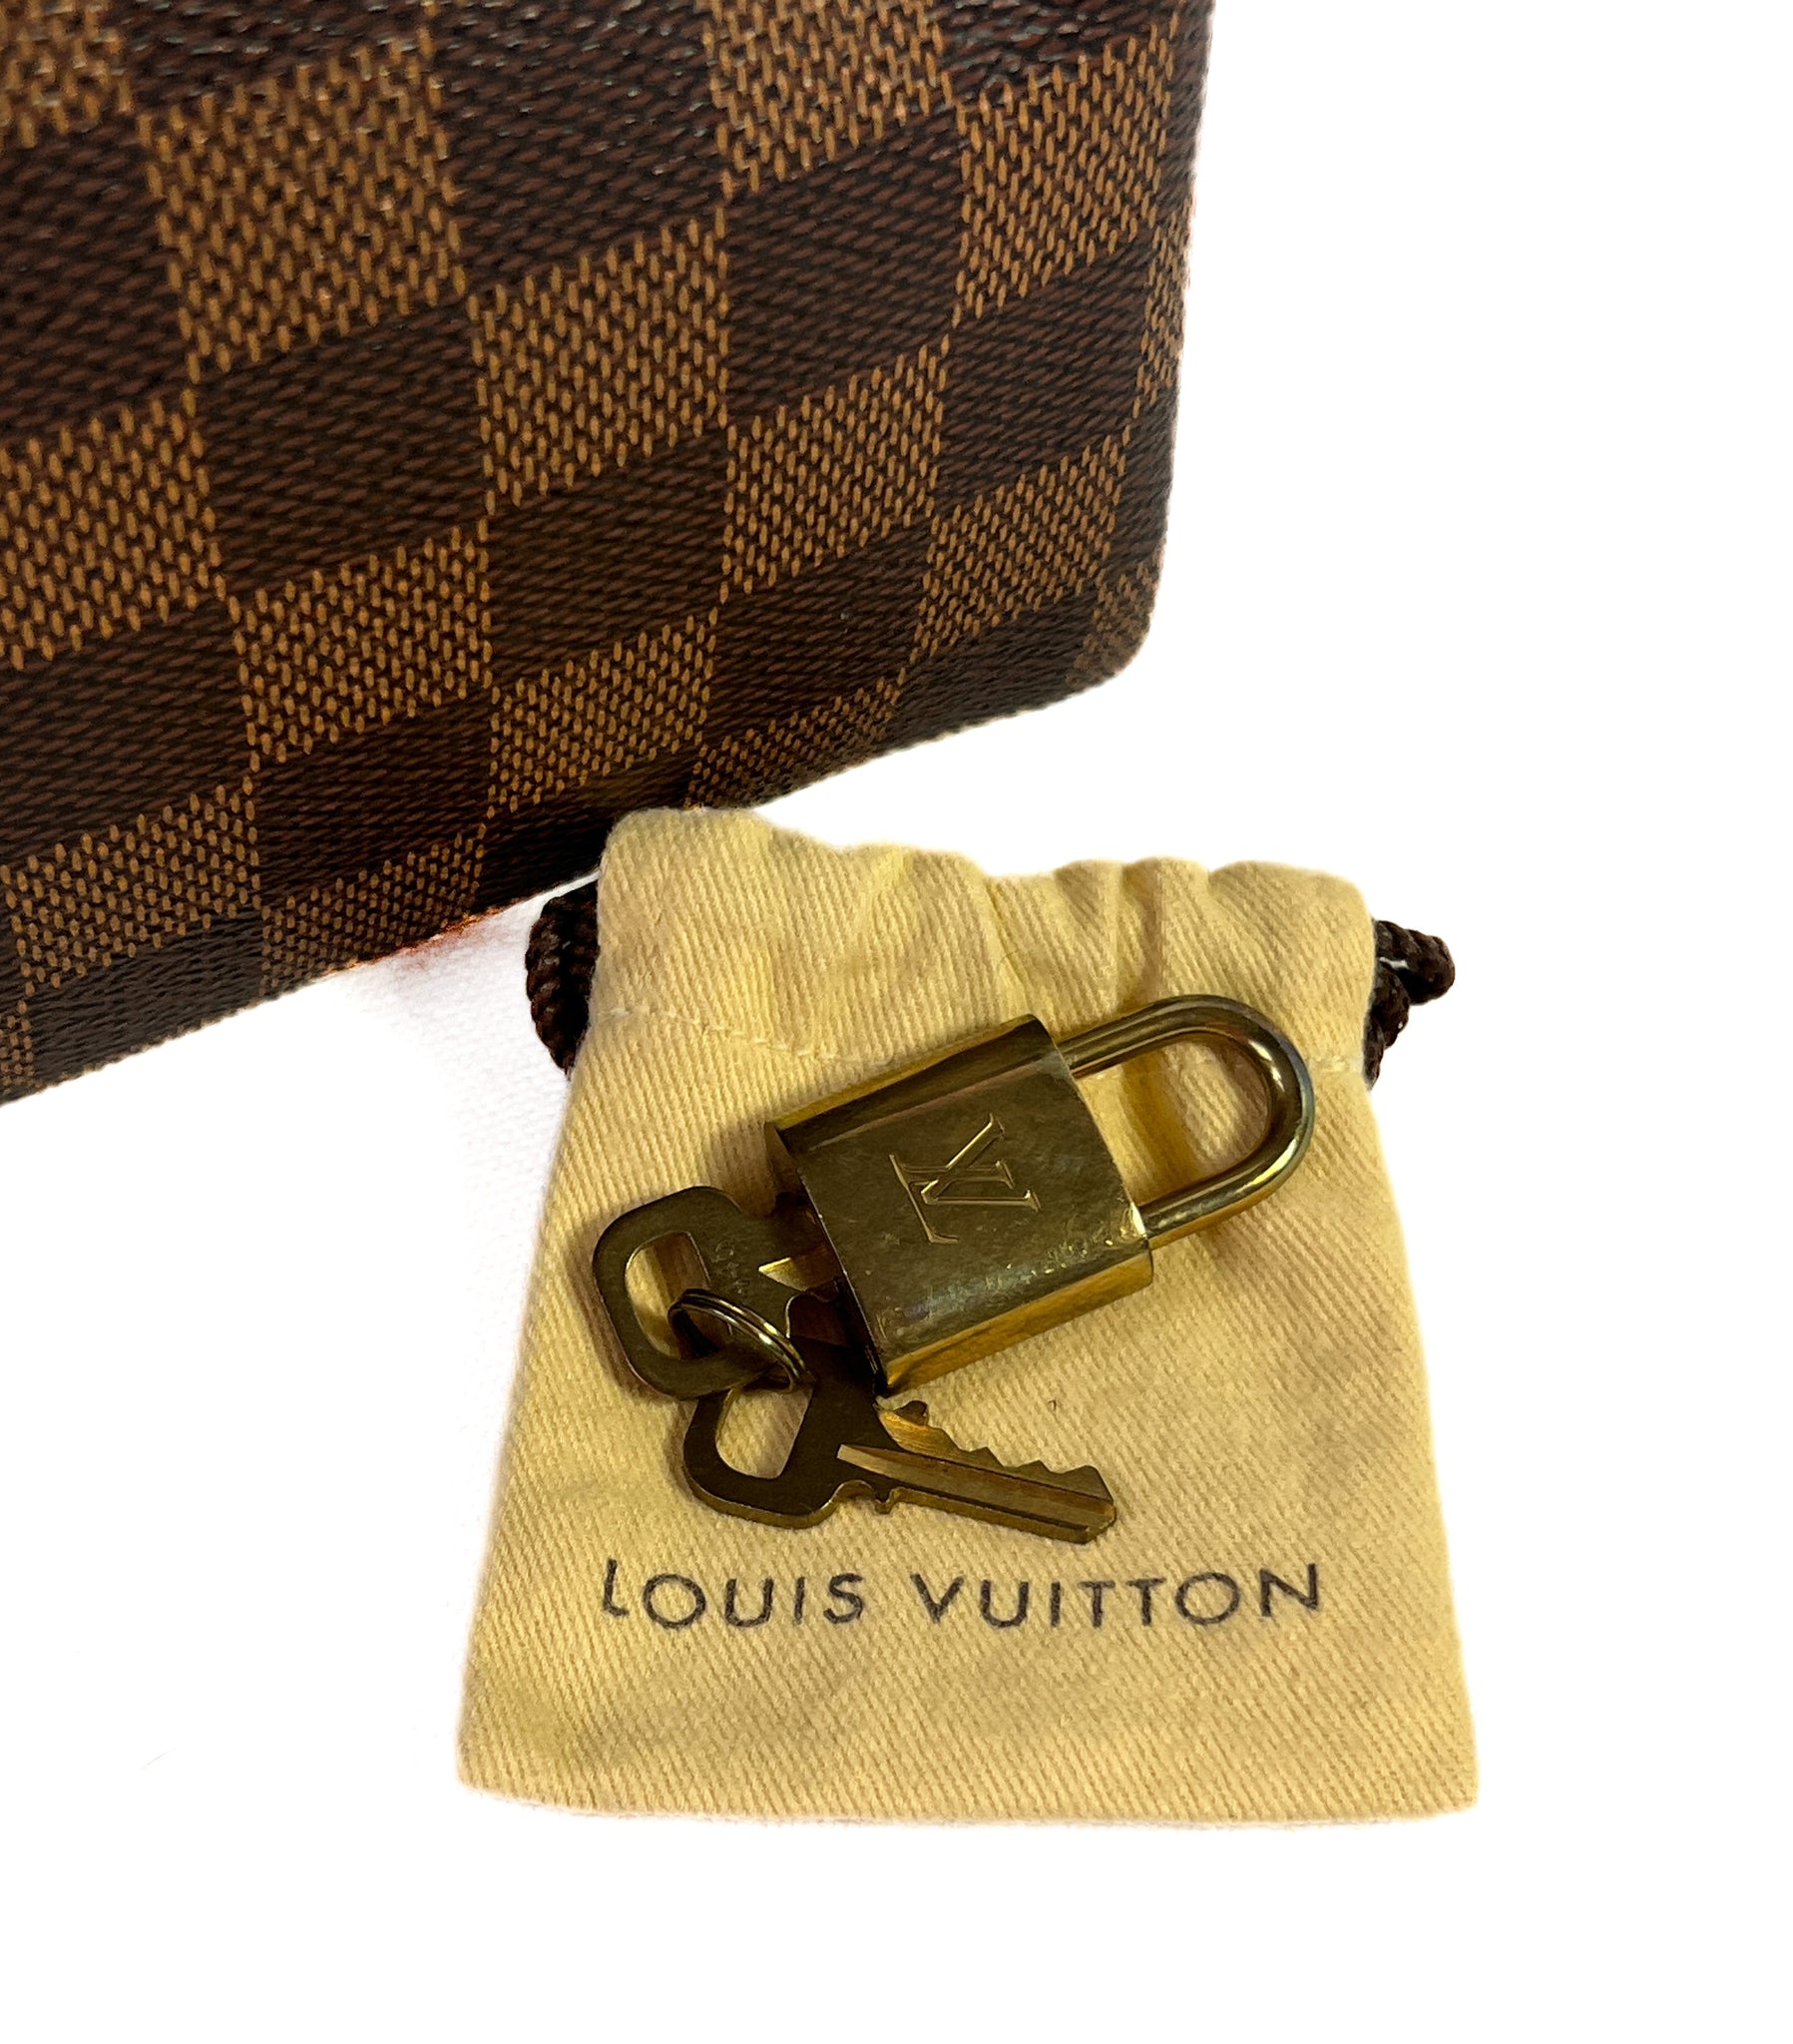 Louis Vuitton damier ebene speedy 30 2014 – My Girlfriend's